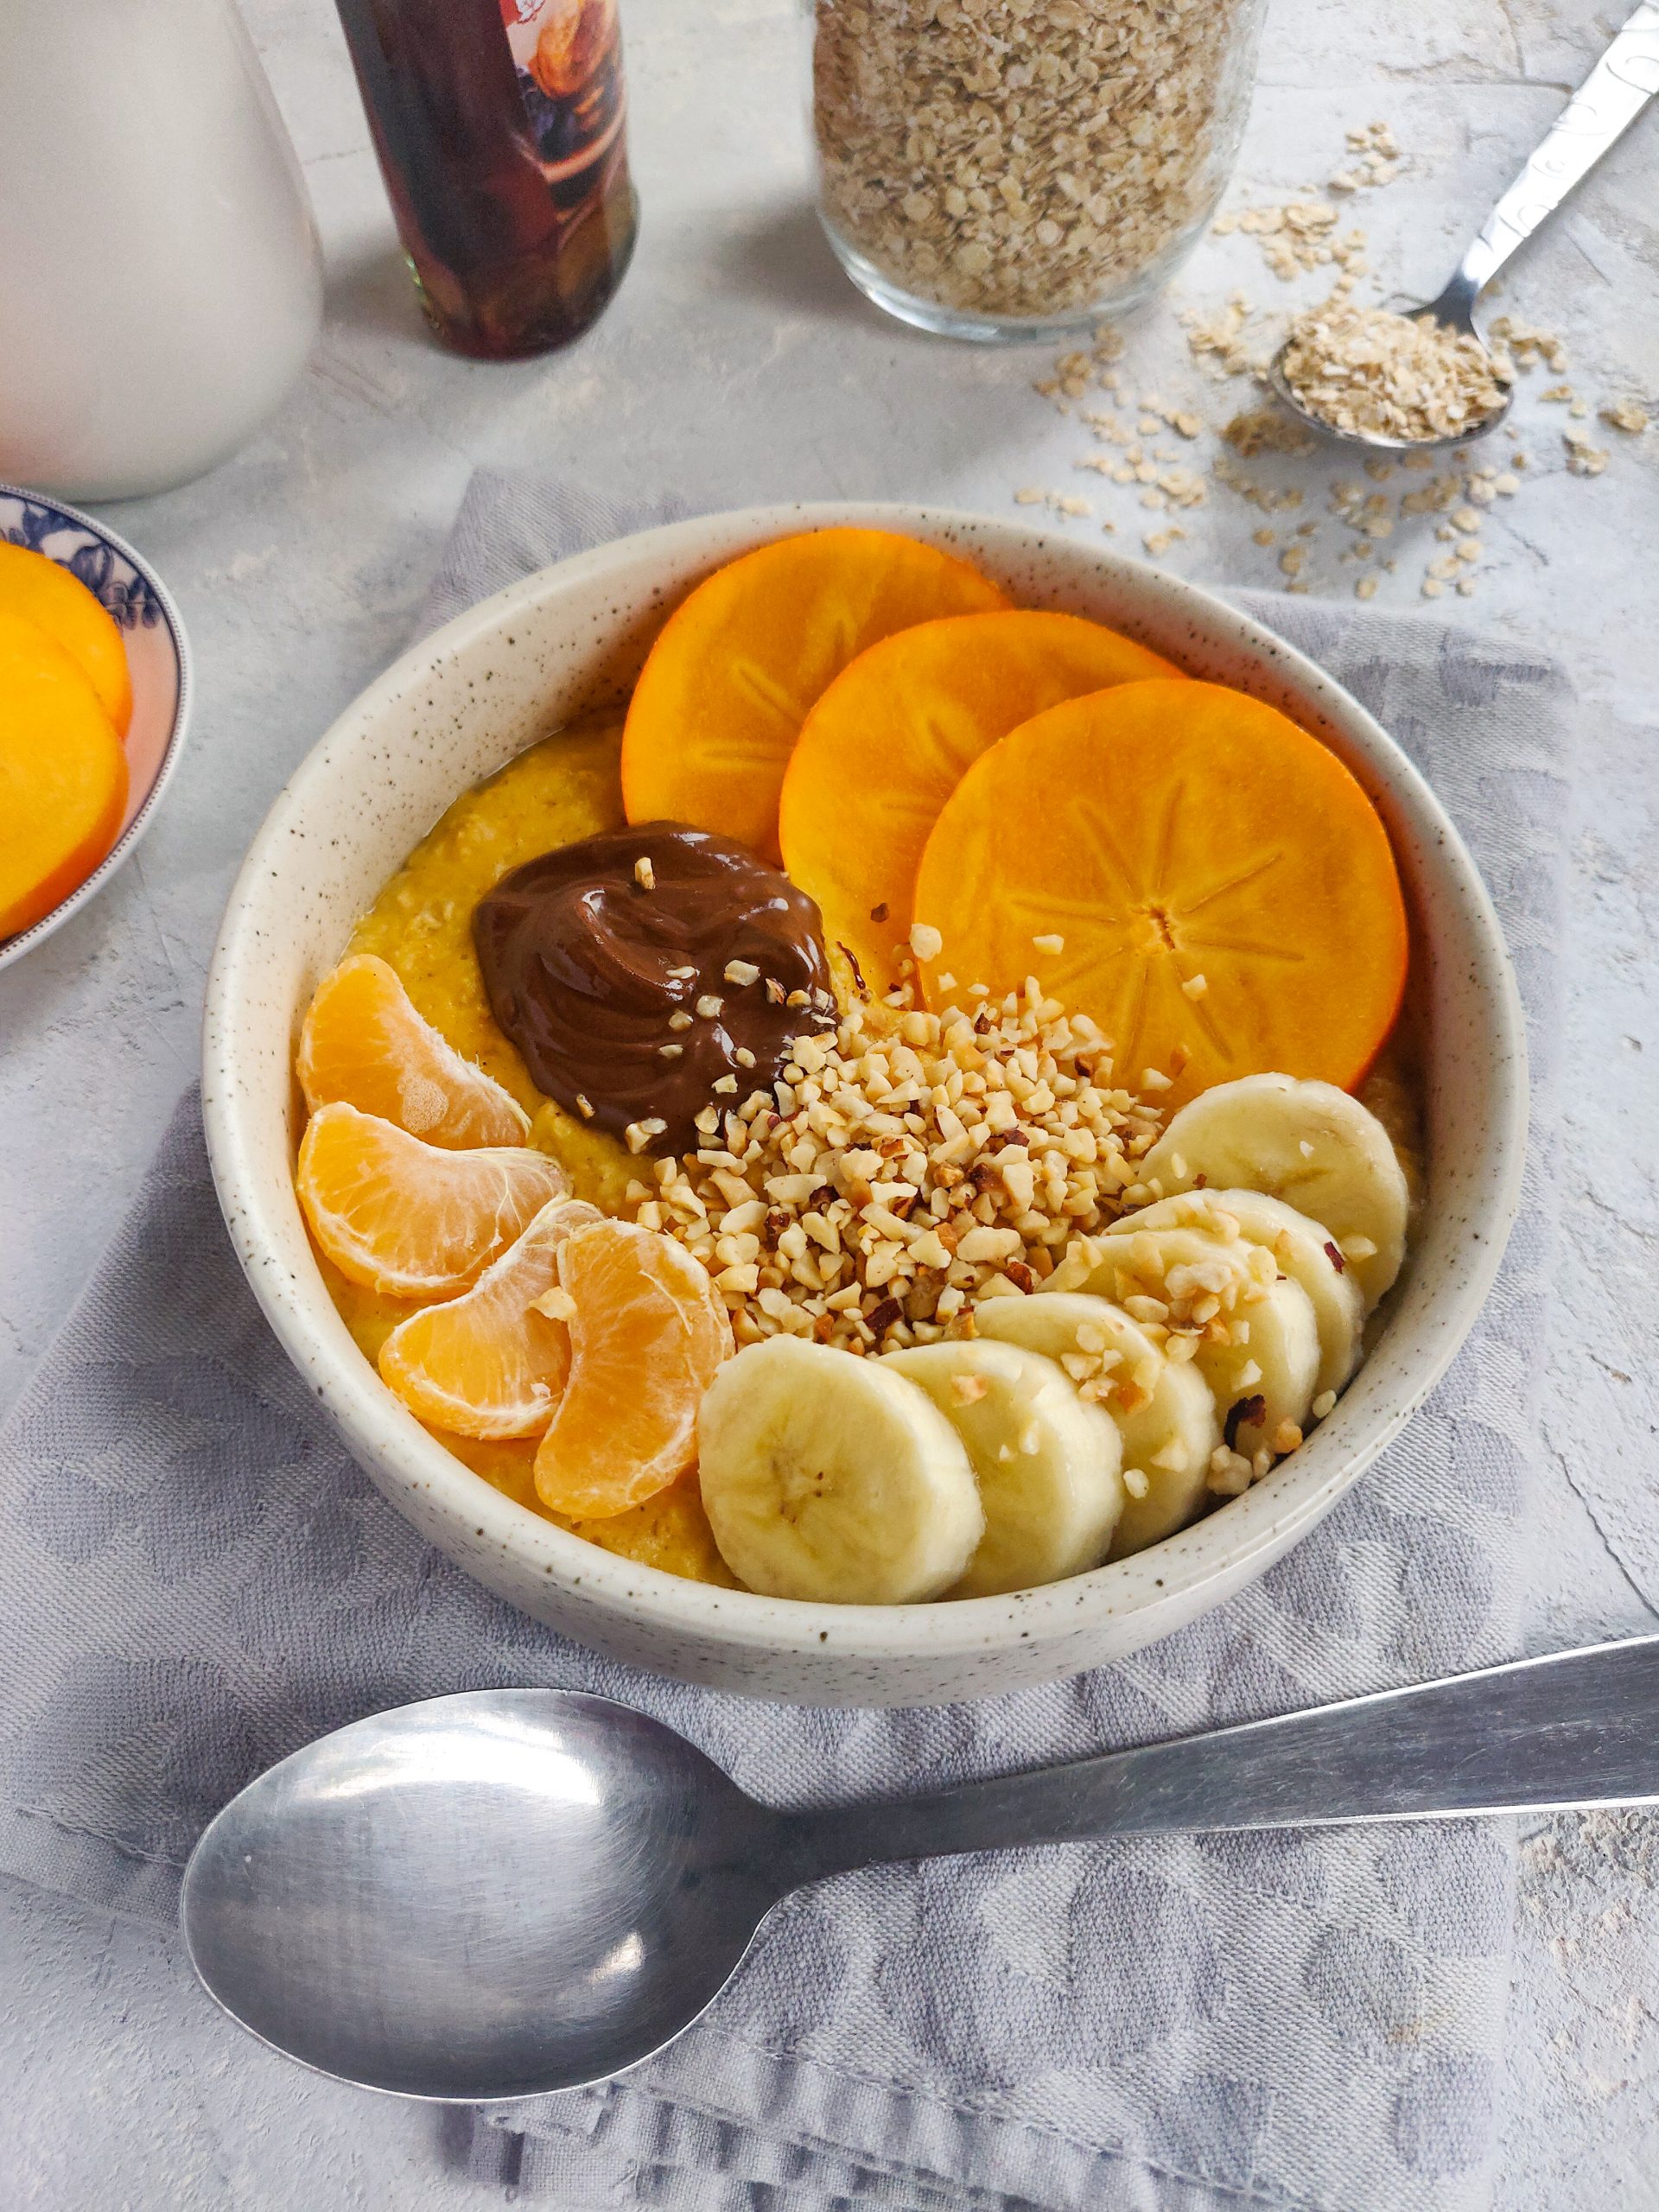 Lire la suite à propos de l’article Pumpkin porridge au chocolat